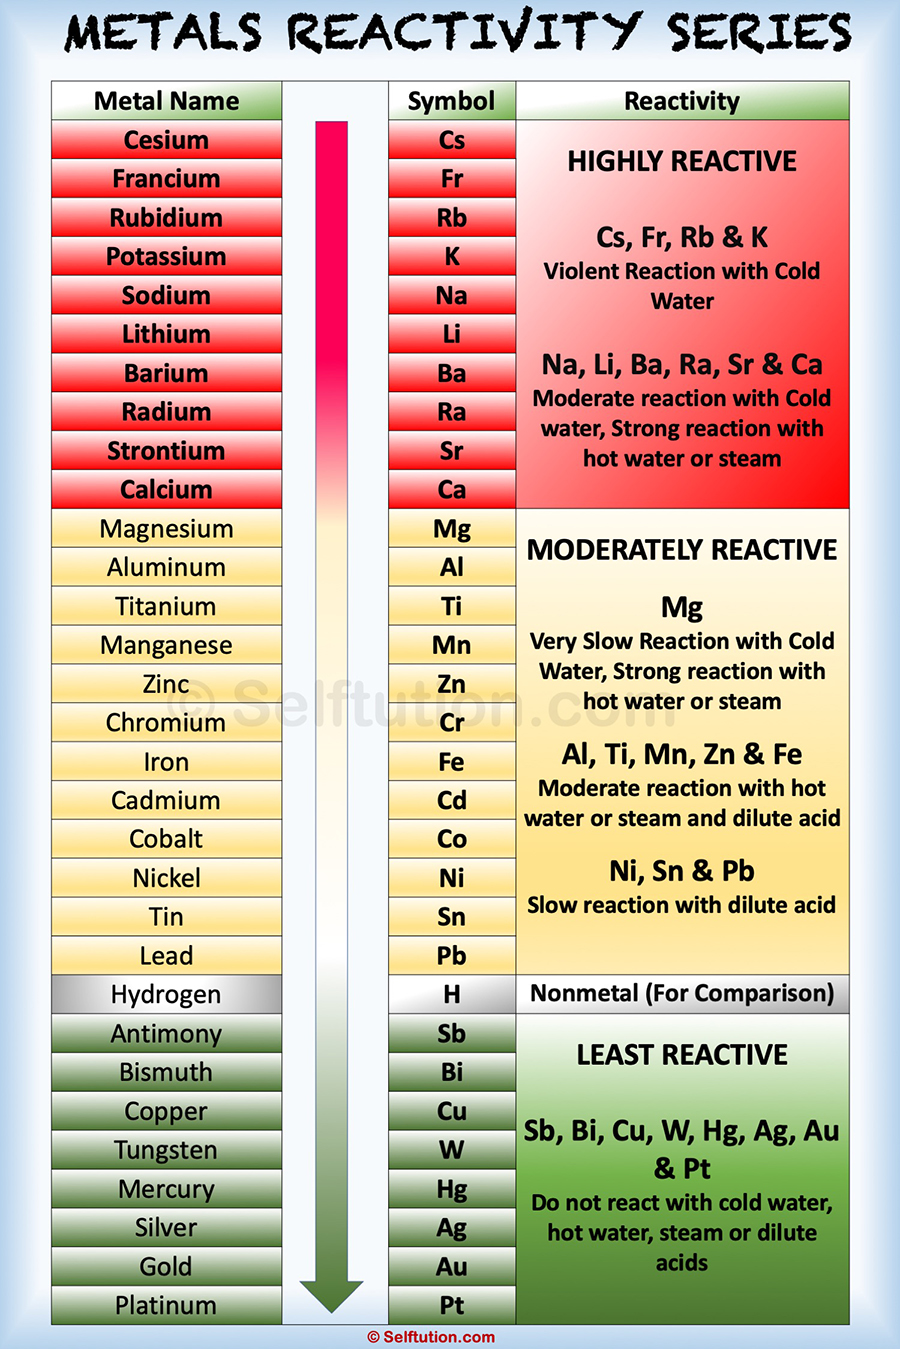 reactivity of metals